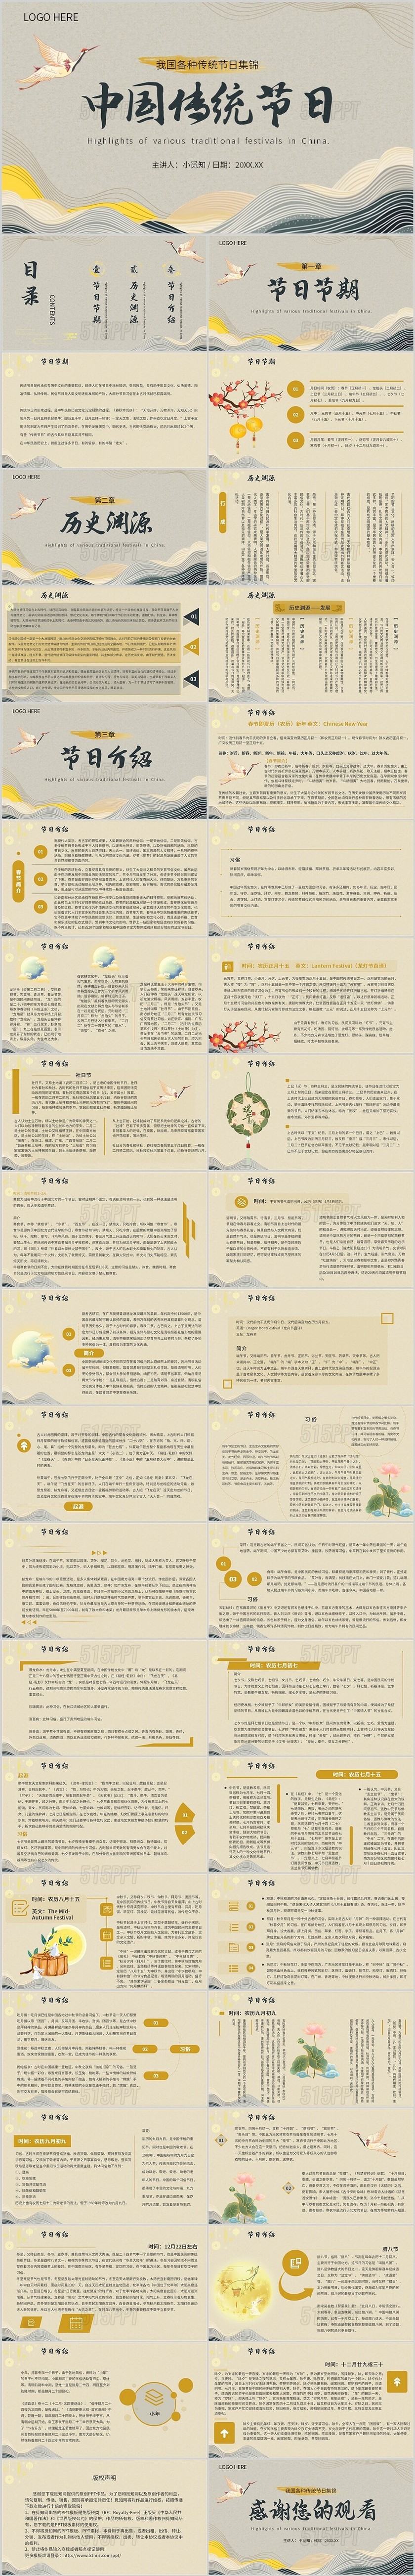 中国风中国传统节日集锦内容型PPT模板